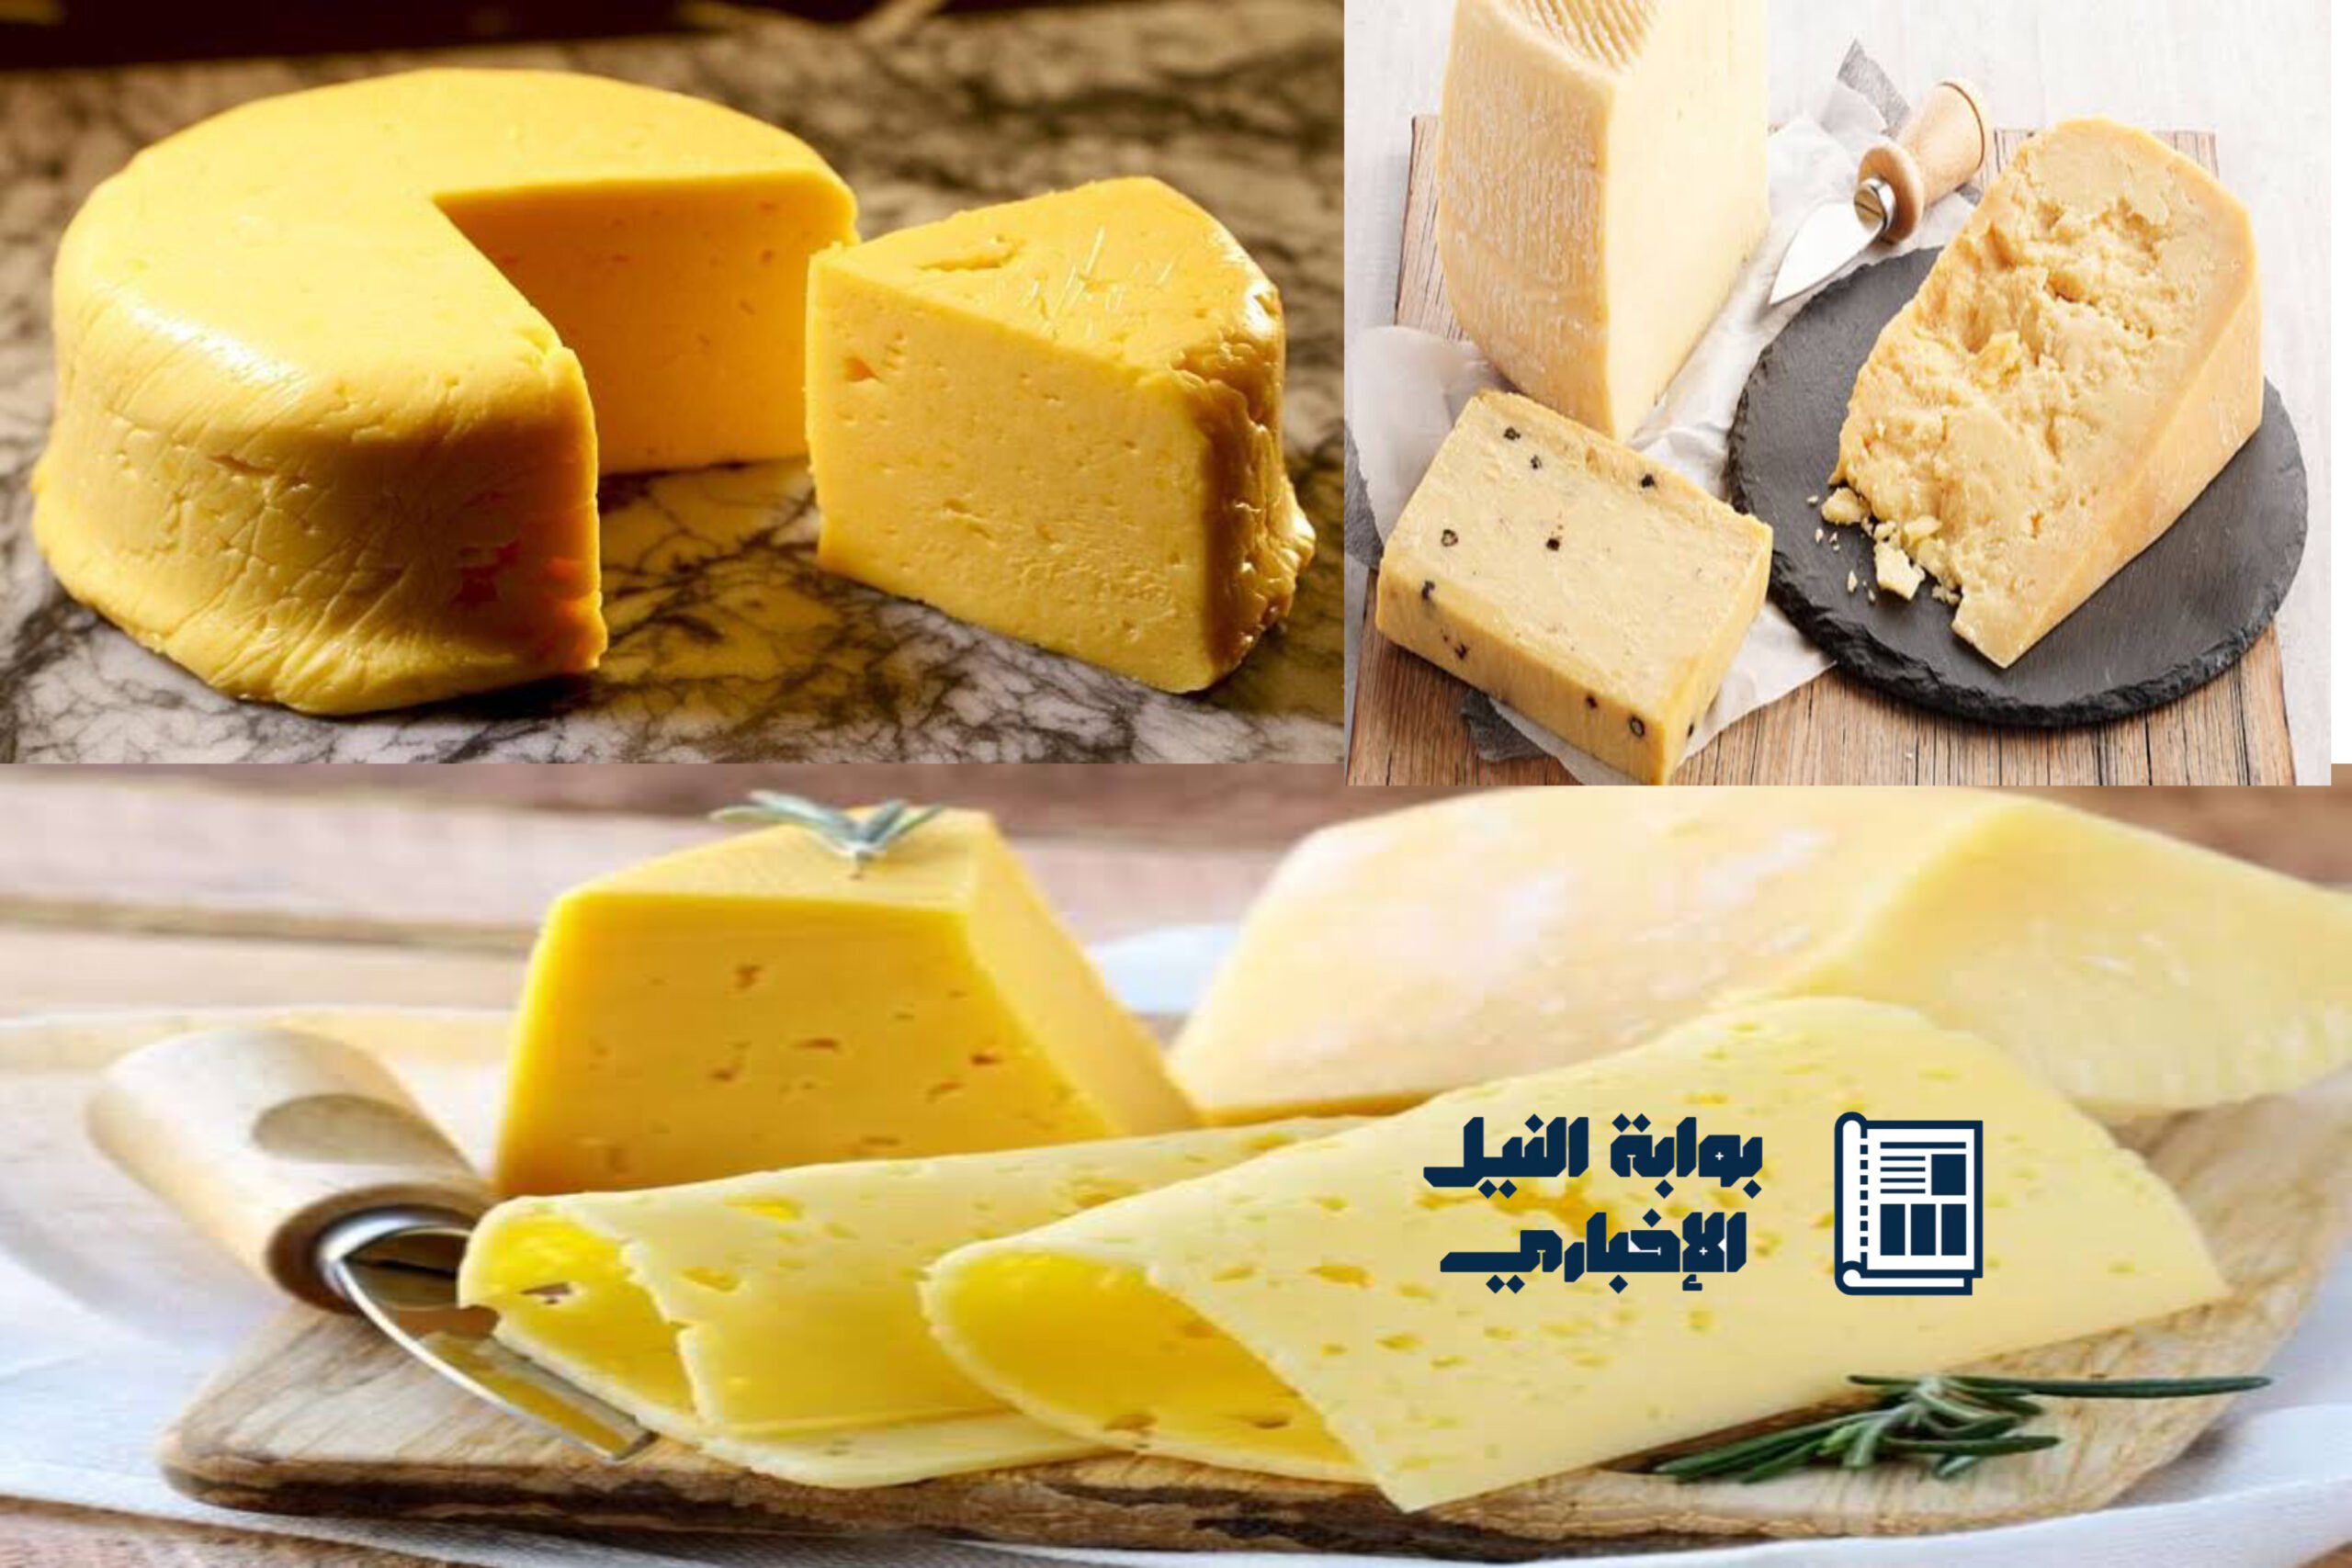 وفر فلوسك .. طريقة عمل الجبنة الرومى في المنزل زي المصانع بأقل التكاليف بطعم لذيذ وشهي